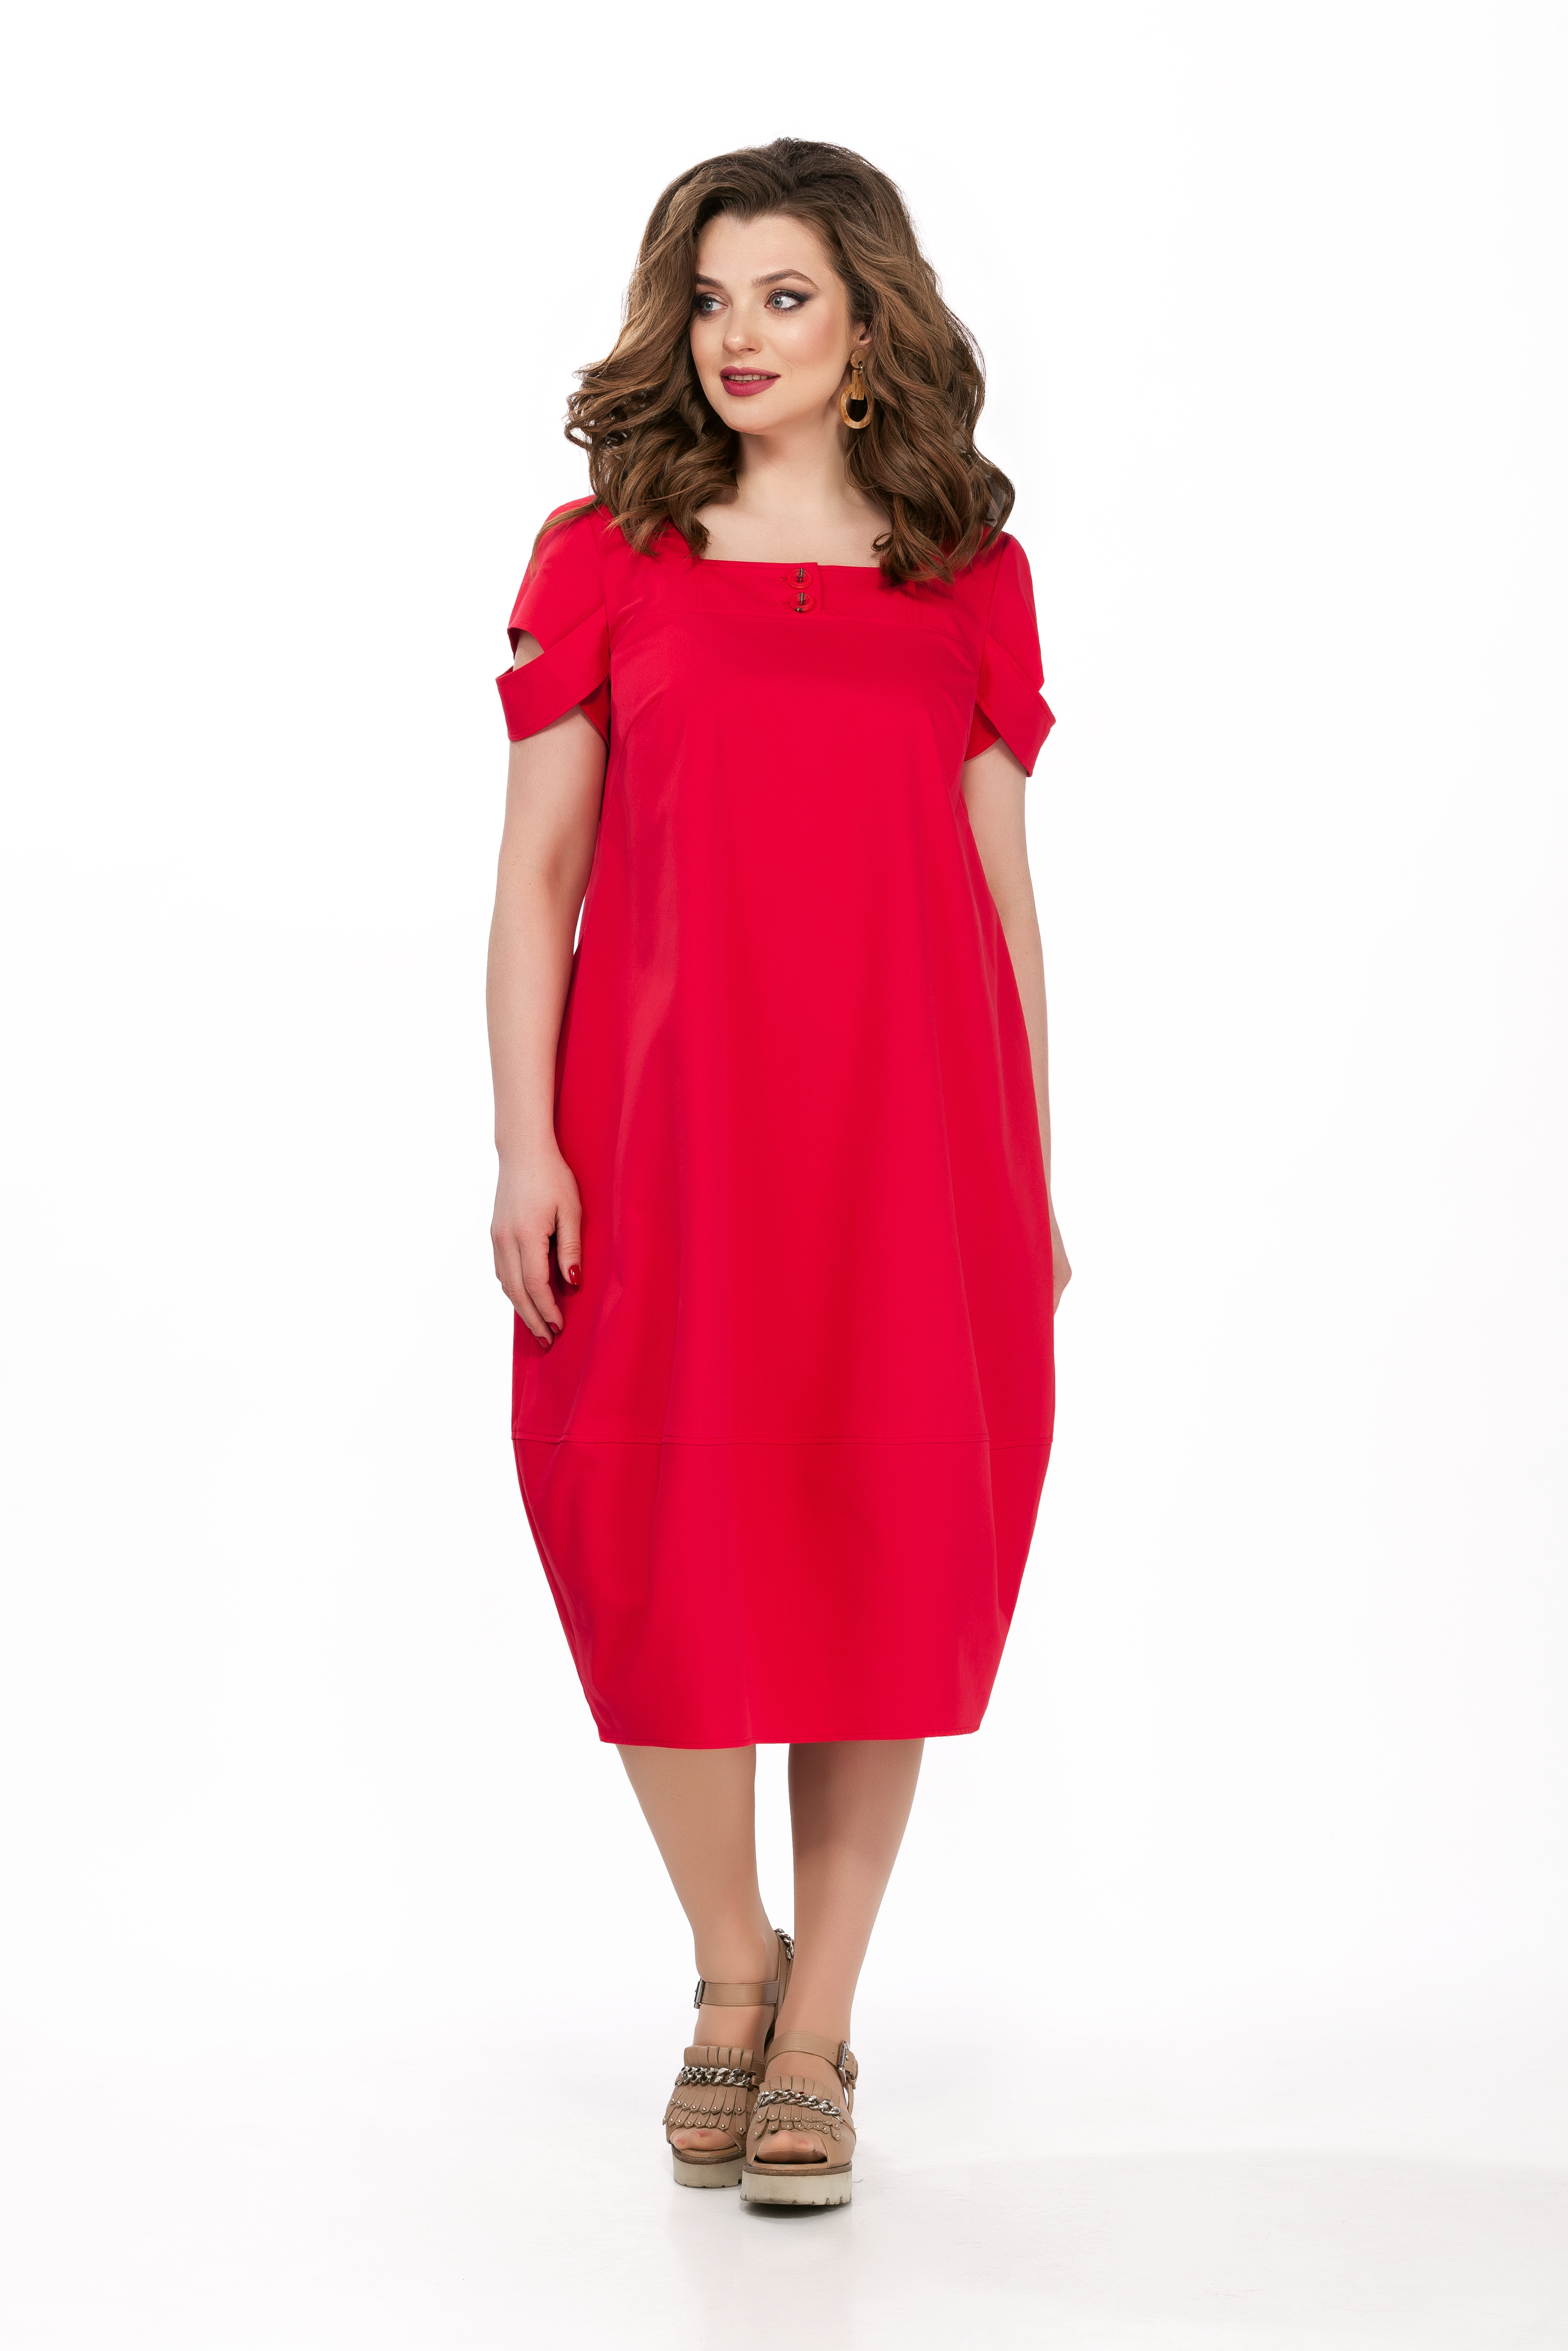 Платье с квадратным вырезом горловины и декором на рукаве, красное